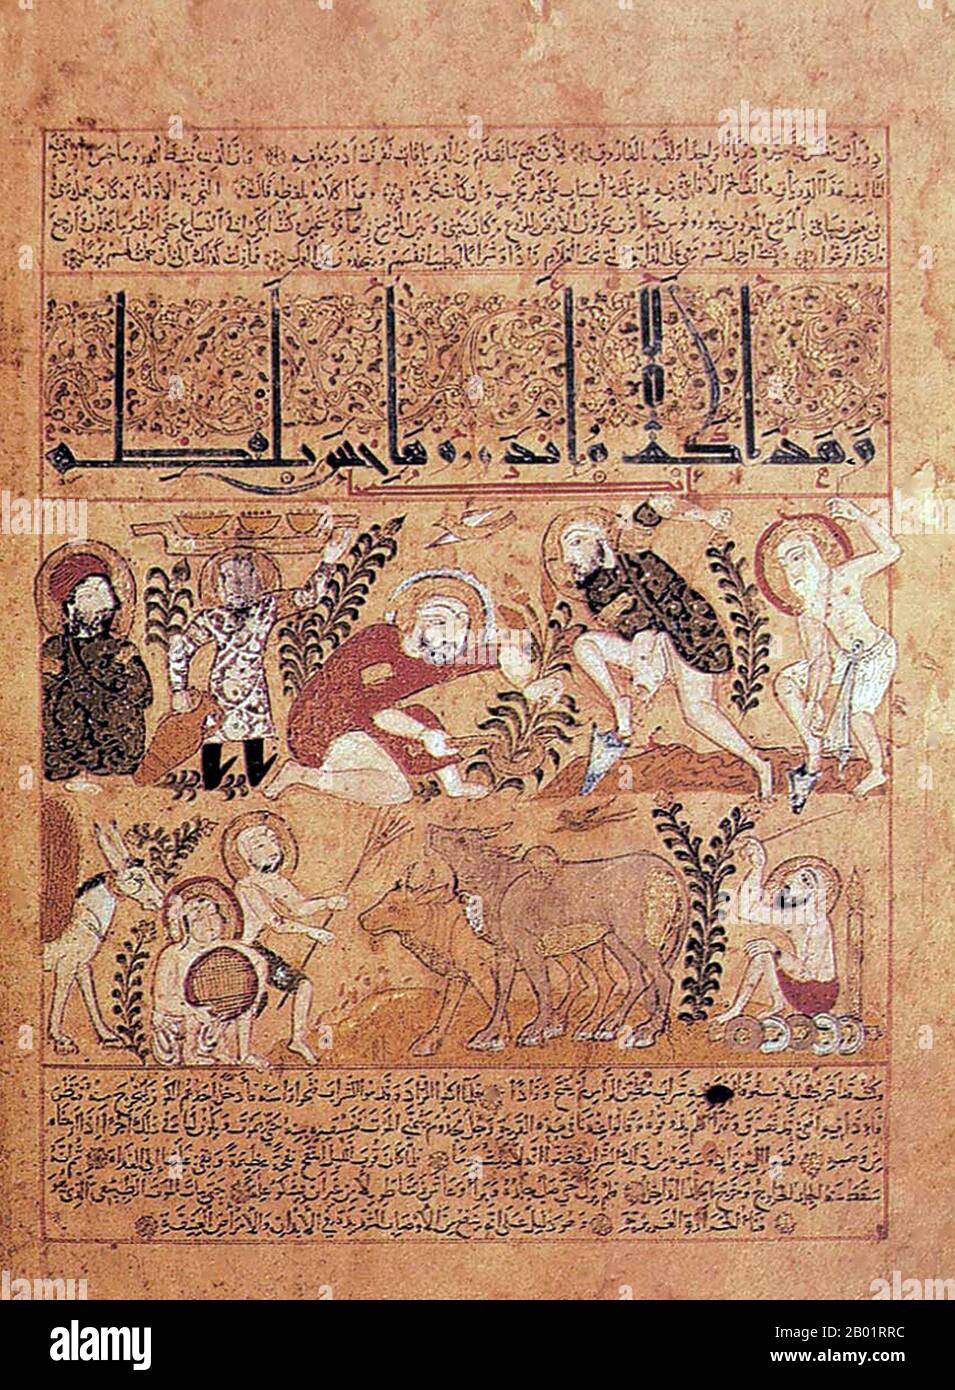 Irak: Der Arzt Andromakhos beobachtet verschiedene landwirtschaftliche Aktivitäten. Beleuchtetes Folio aus dem „Kitab al-Diryaq“ (Buch der Gegenpunkte) von Pseudo-Galen, Mosul School of Painting, 1199. Die sogenannte Mosul School of Painting bezieht sich auf einen Stil der Miniaturmalerei, der sich im späten 12. Bis frühen 13. Jahrhundert unter der Schirmherrschaft der Zangiden (1127–1222) im Nordirak entwickelte. In Technik und Stil ähnelte die Mossul-Schule dem Gemälde der Seldschuken, die den Irak zu dieser Zeit beherrschten, aber die Mossul-Künstler hatten einen schärferen Sinn für Realismus, der auf dem Thema basiert. Stockfoto